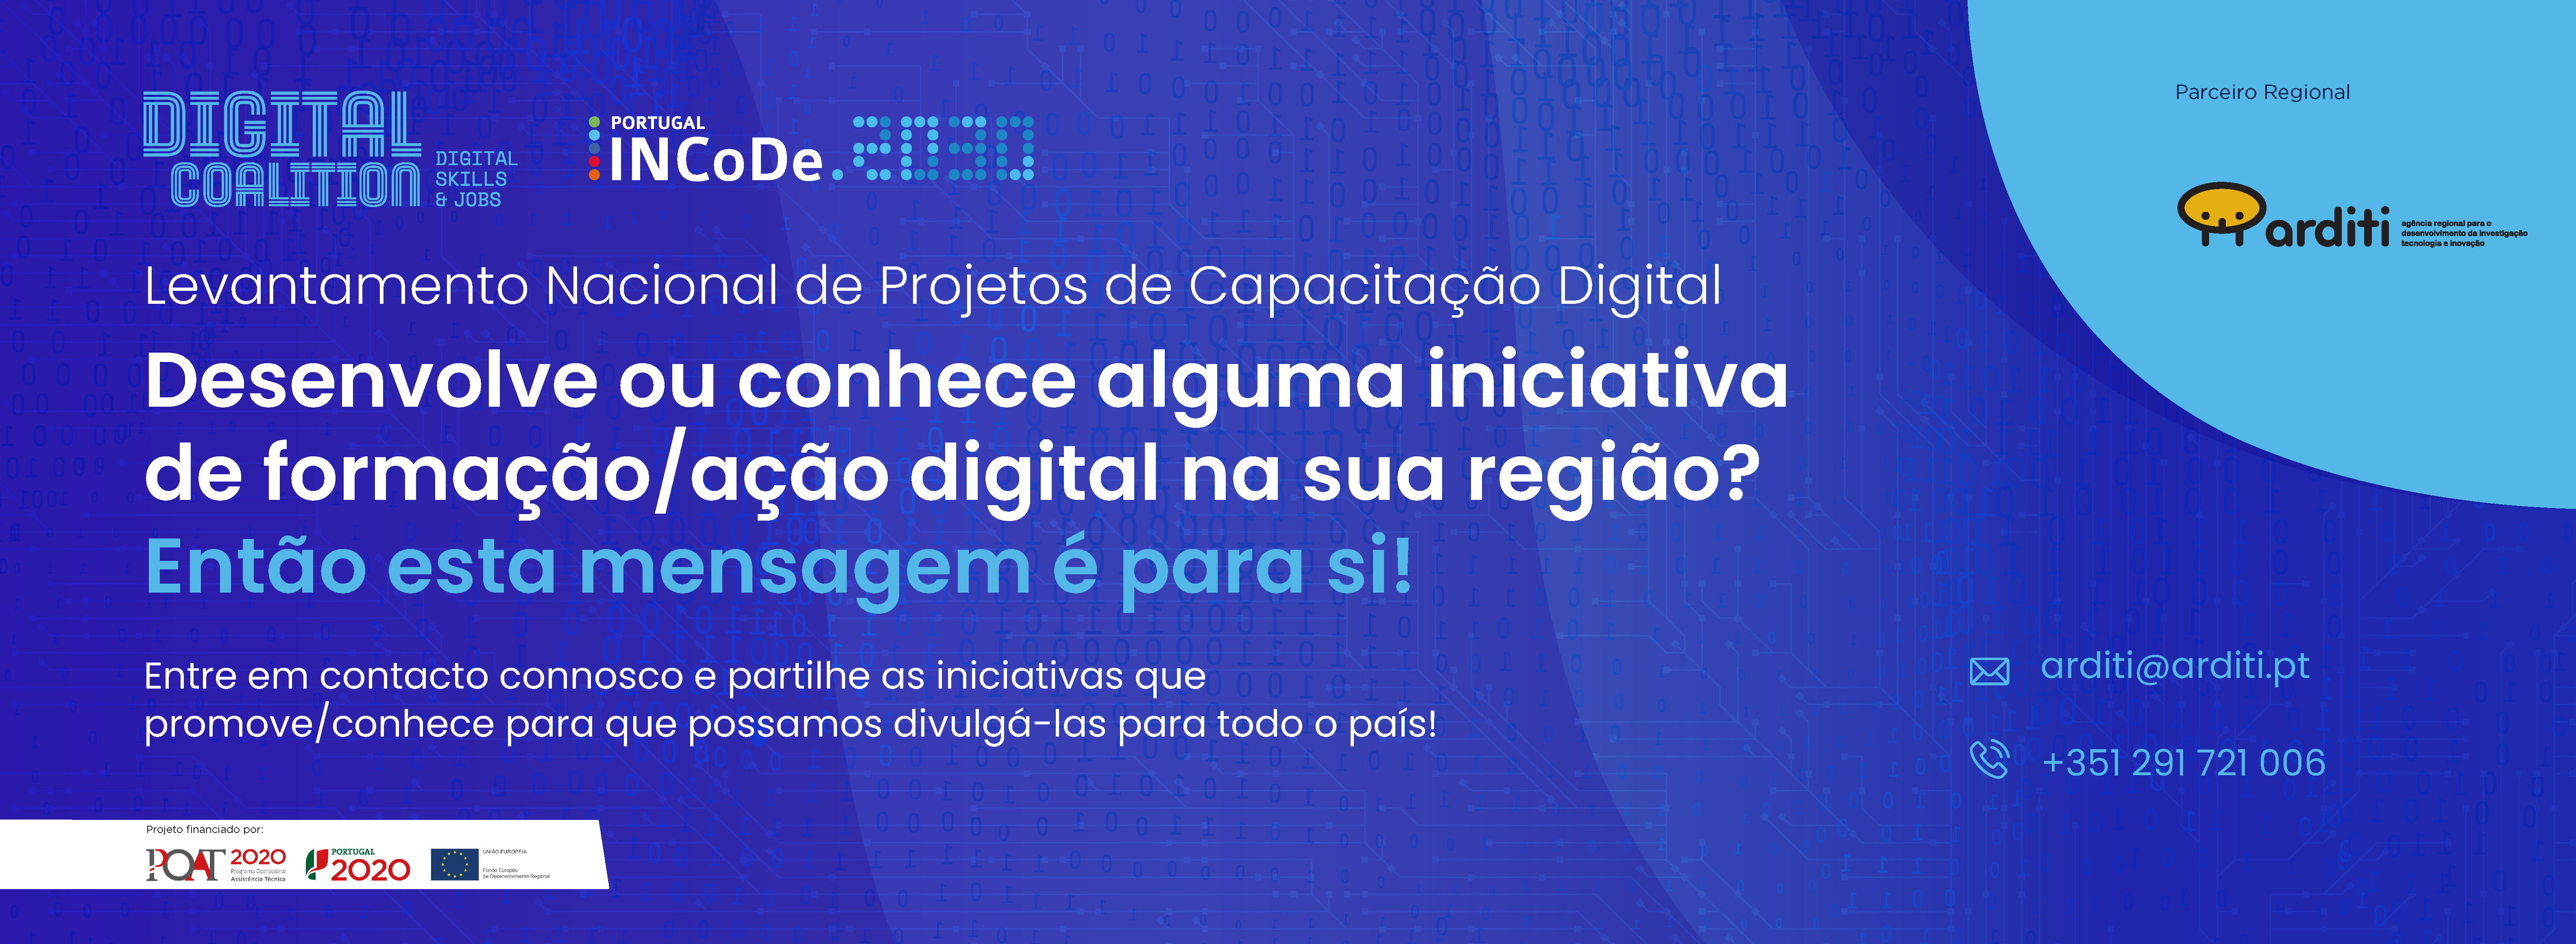 INCoDe.2030 cataloga iniciativas de capacitação digital em Portugal